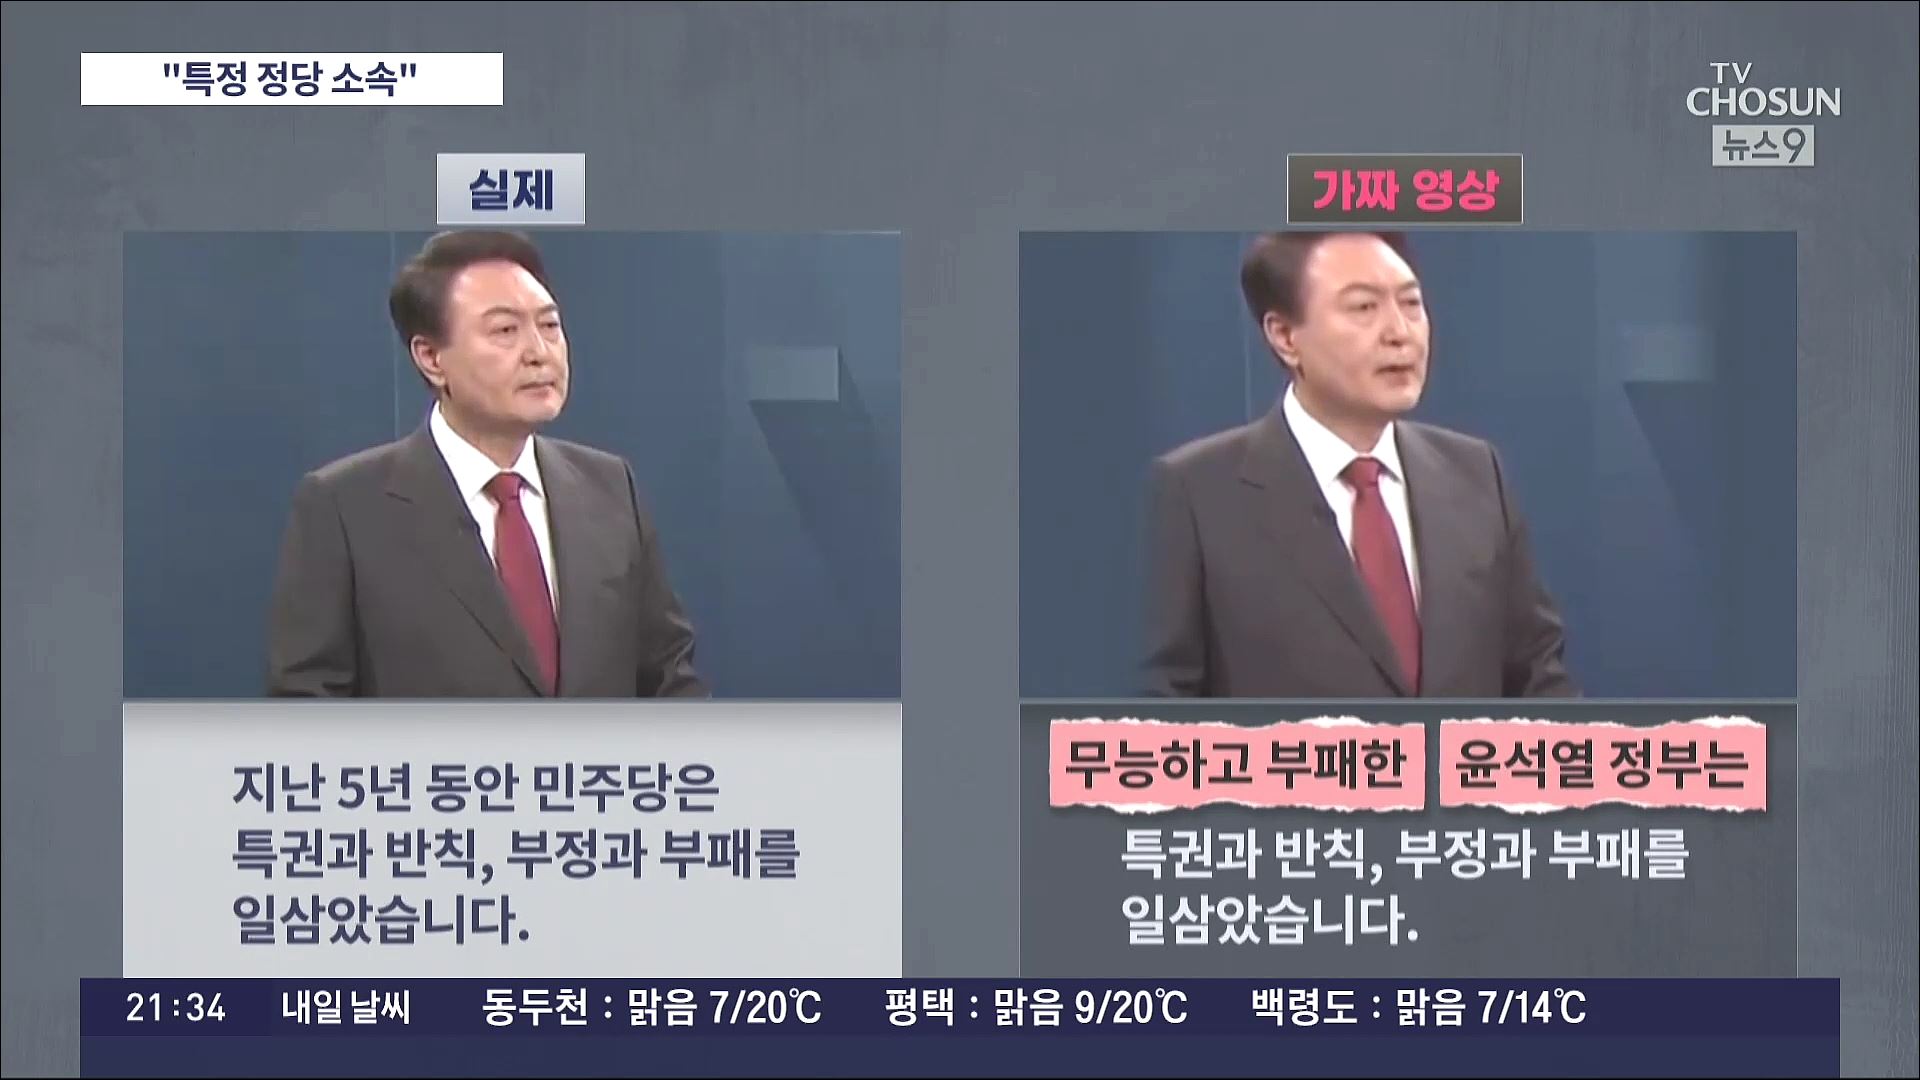 경찰 ''尹 가짜영상' 제작자, 정당 소속'…조국혁신당 '해촉 중'